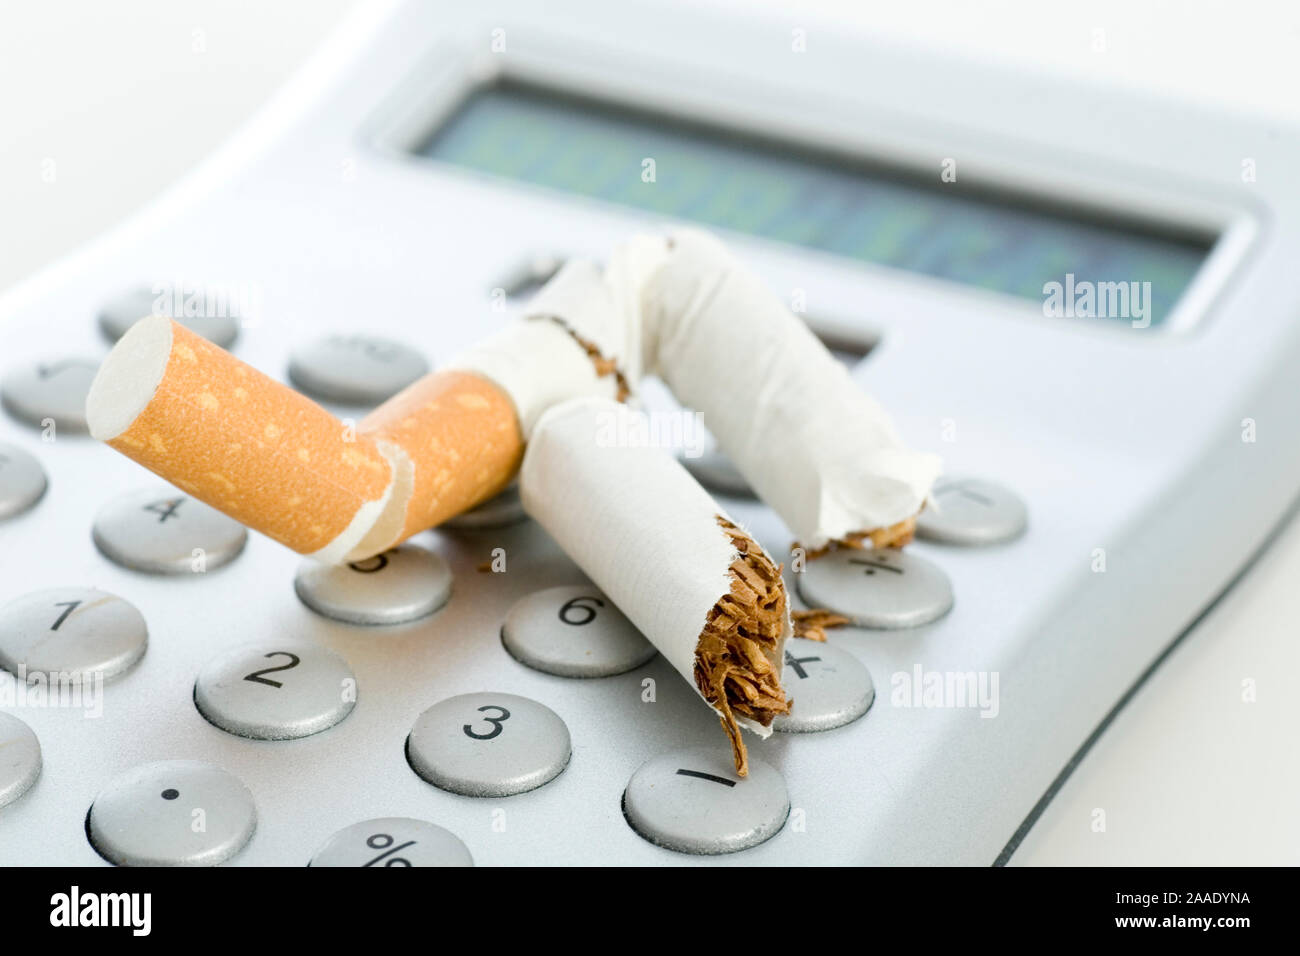 Ausgedrückte Zigarette auf einem Taschenrechner Banque D'Images